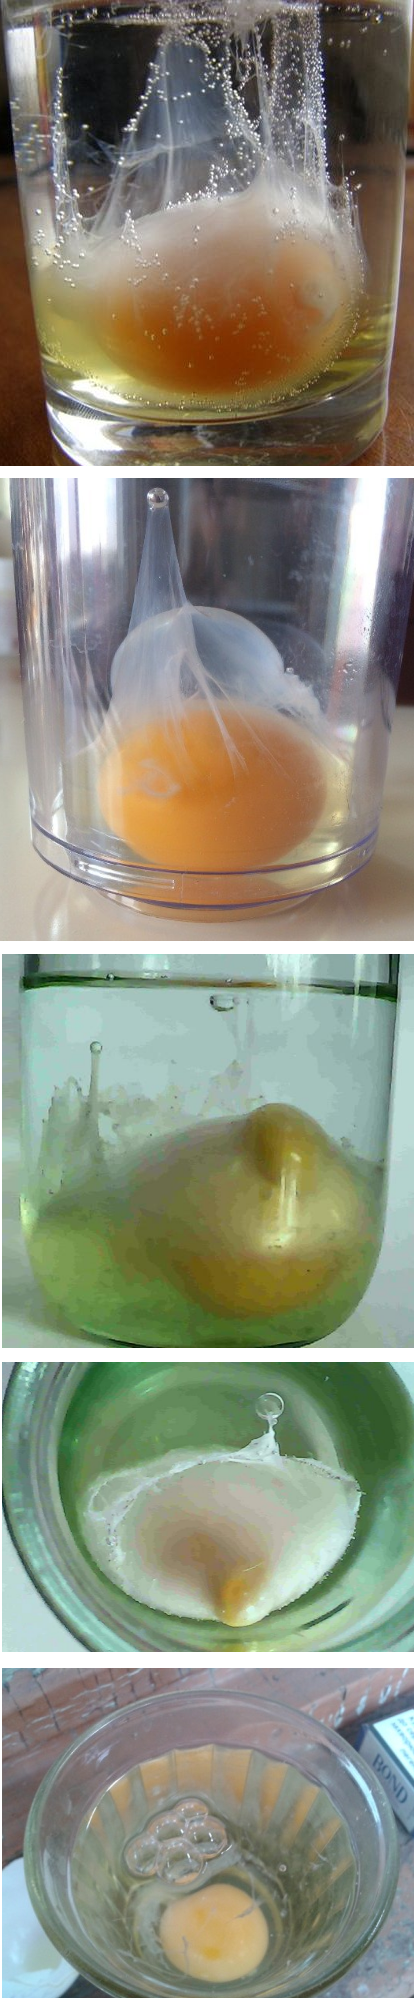 Выкатывание яйцом расшифровка фото. Выкатывание яйцом. Выявление порчи яйцом и водой. Выкатывание порчи яйцом. Выкатывание яйцом порчи и сглаза.